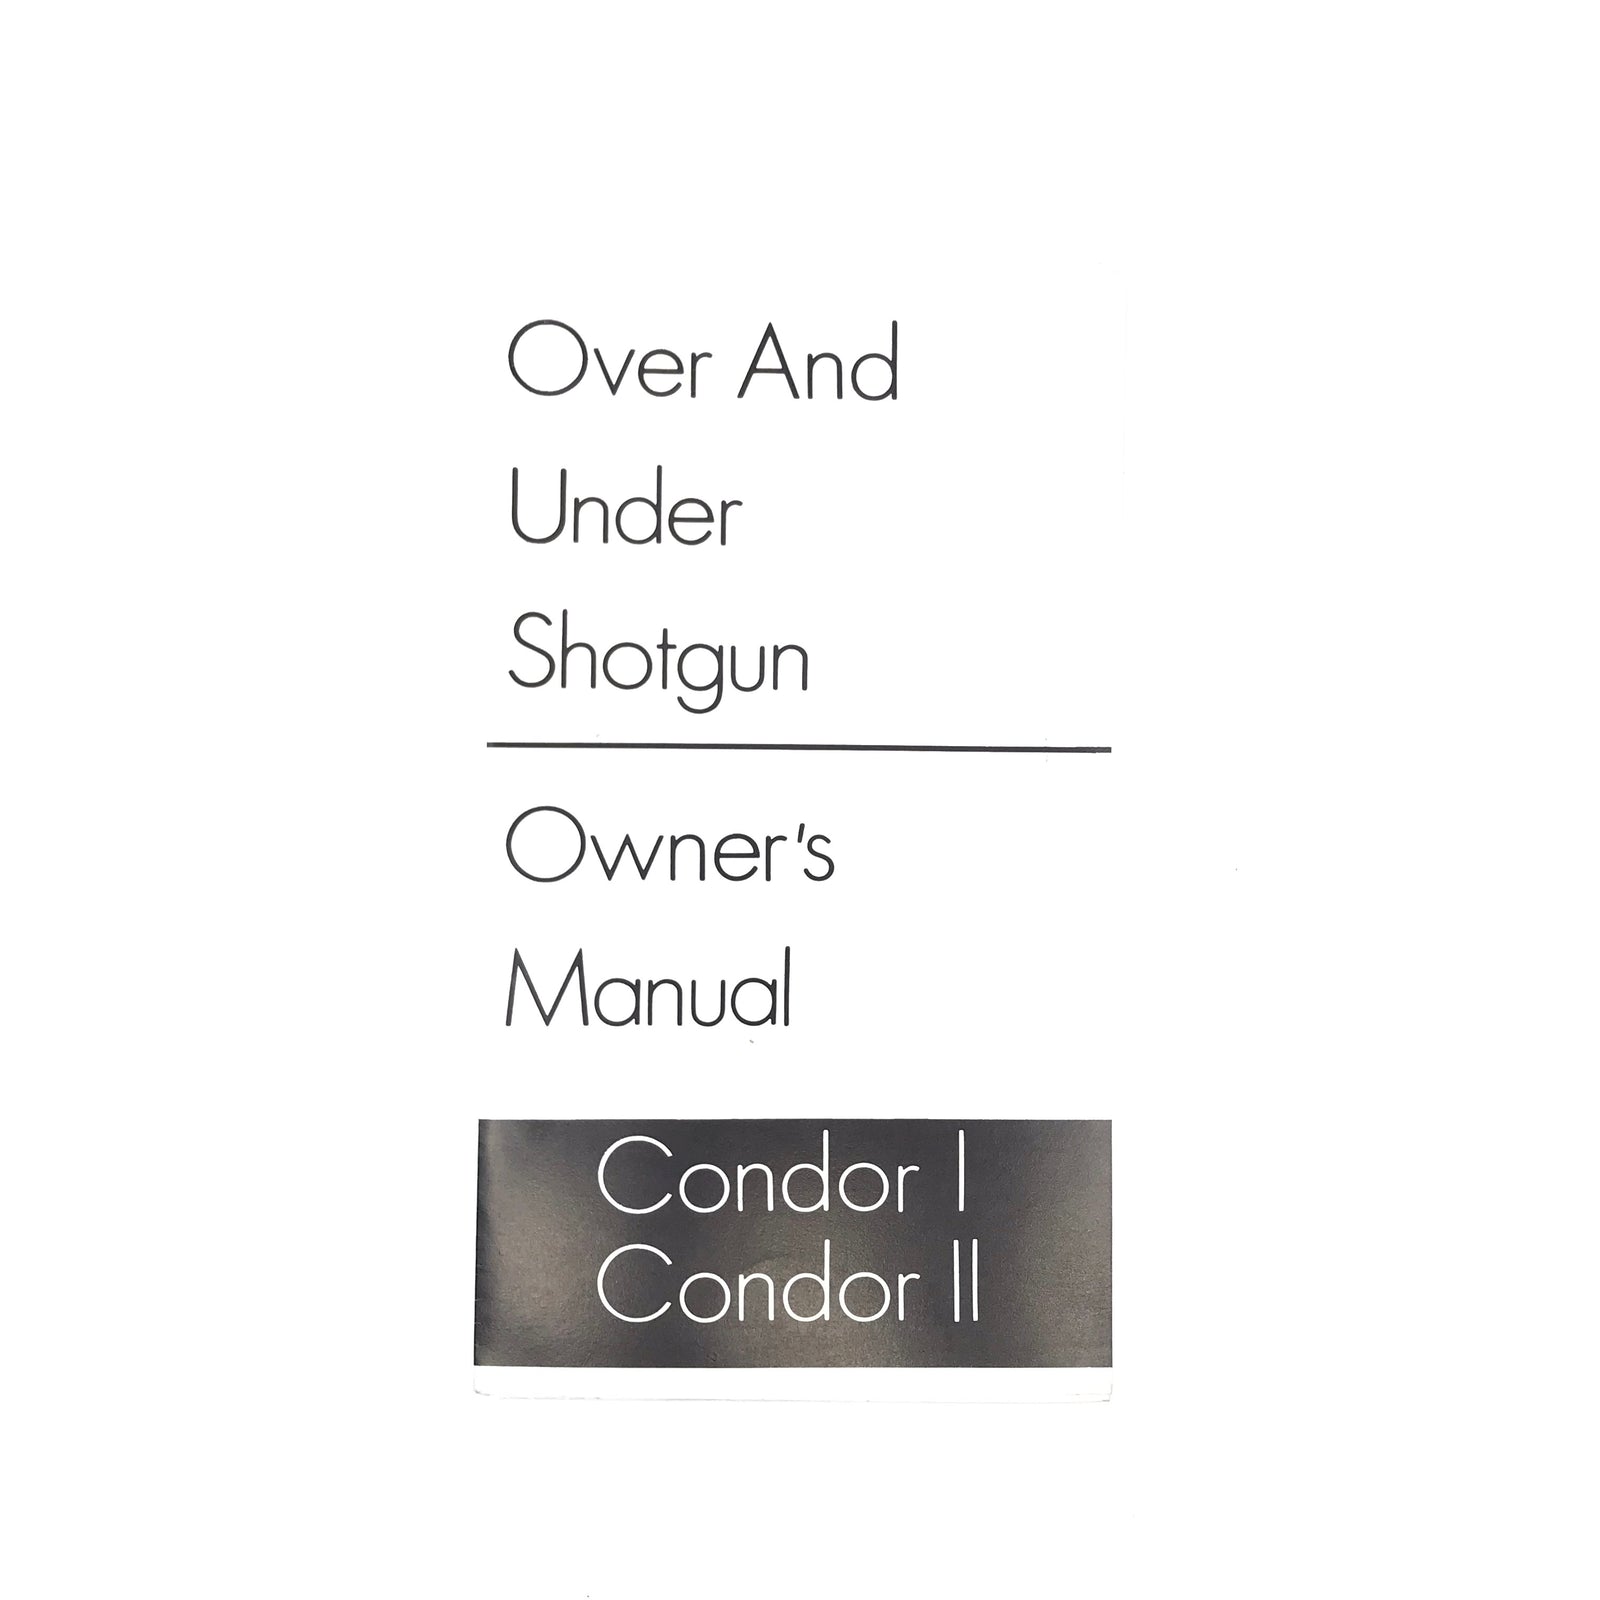 Condor I / Condor II Owner's Manual Over and Under Shotgun